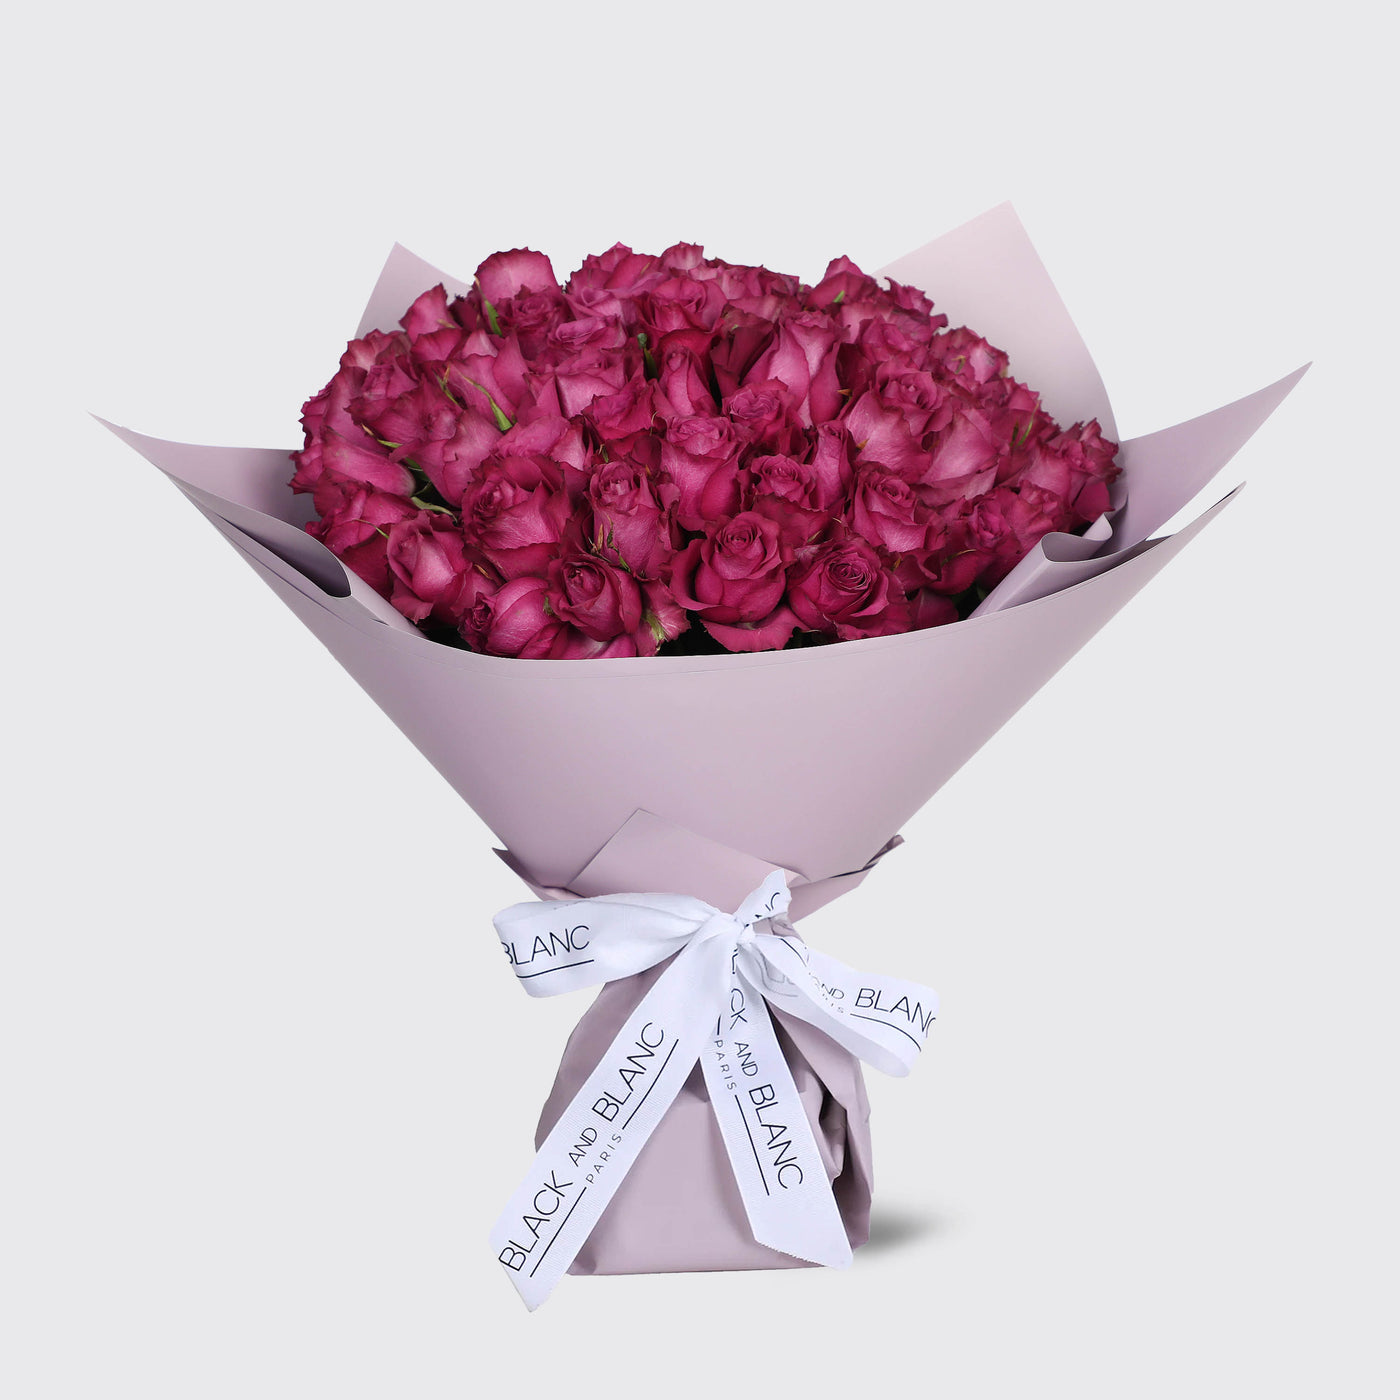 50 Purple Roses Bouquet - Fresh Flowers